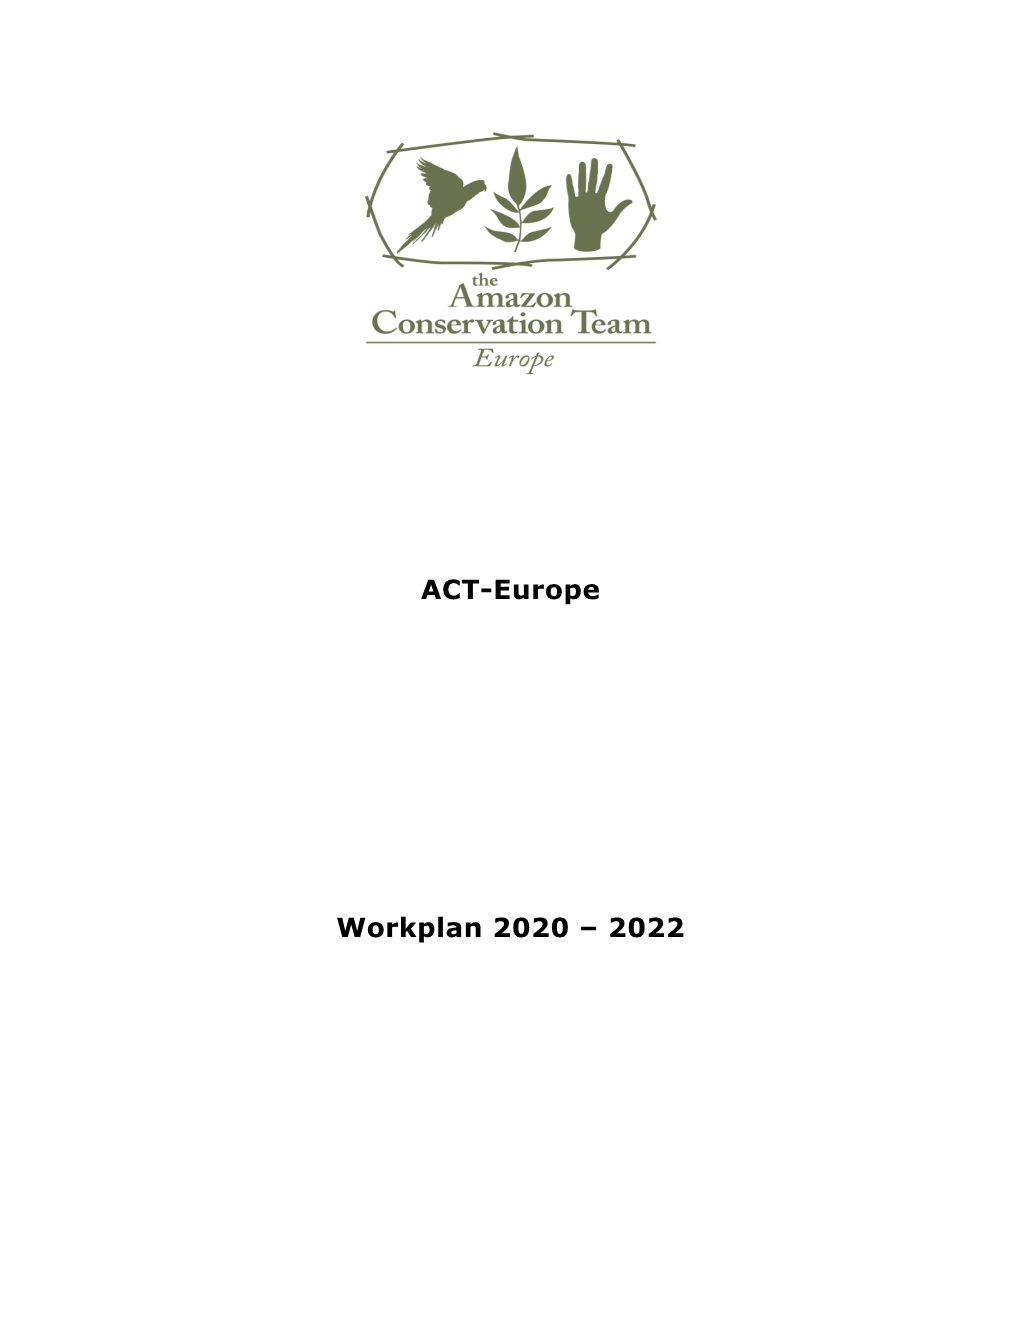 Work Plan 2020-2022